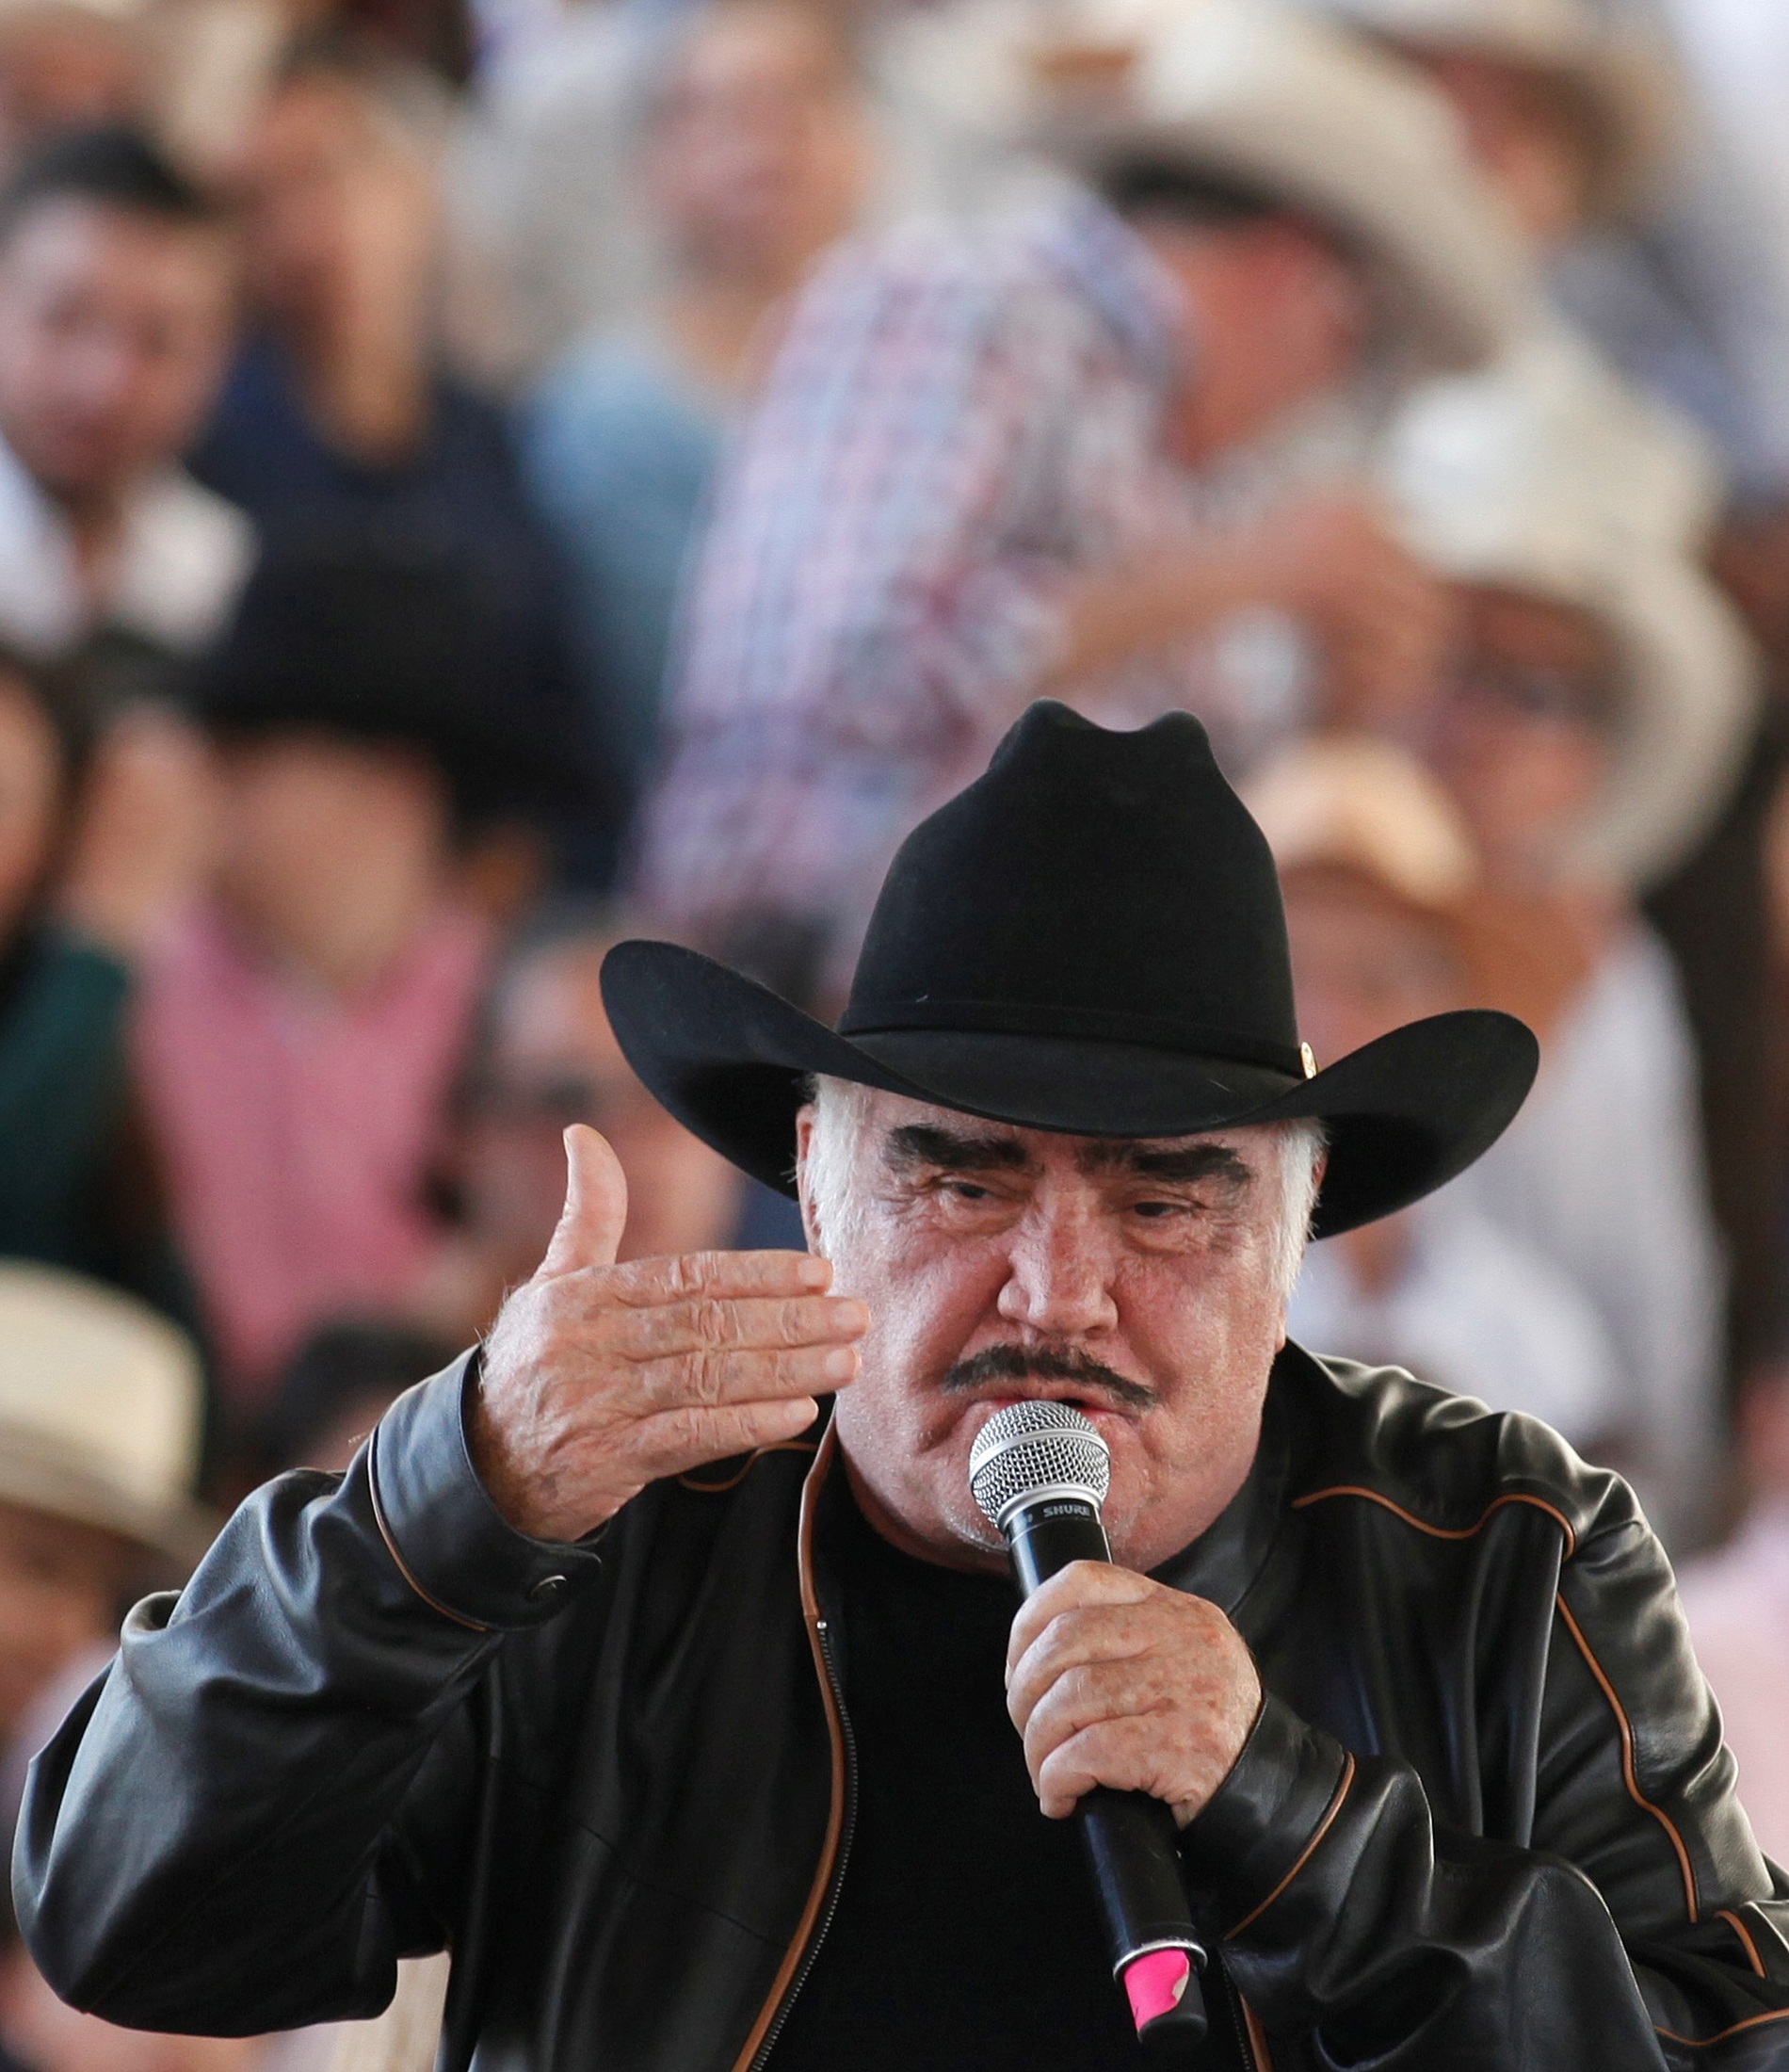 Fotografía de archivo fechada el 17 de febrero de 2020 del cantante mexicano Vicente Fernández durante un acto en la ciudad de Guadalajara, en el estado de Jalisco (México). EFE/ Francisco Guasco/Archivo
